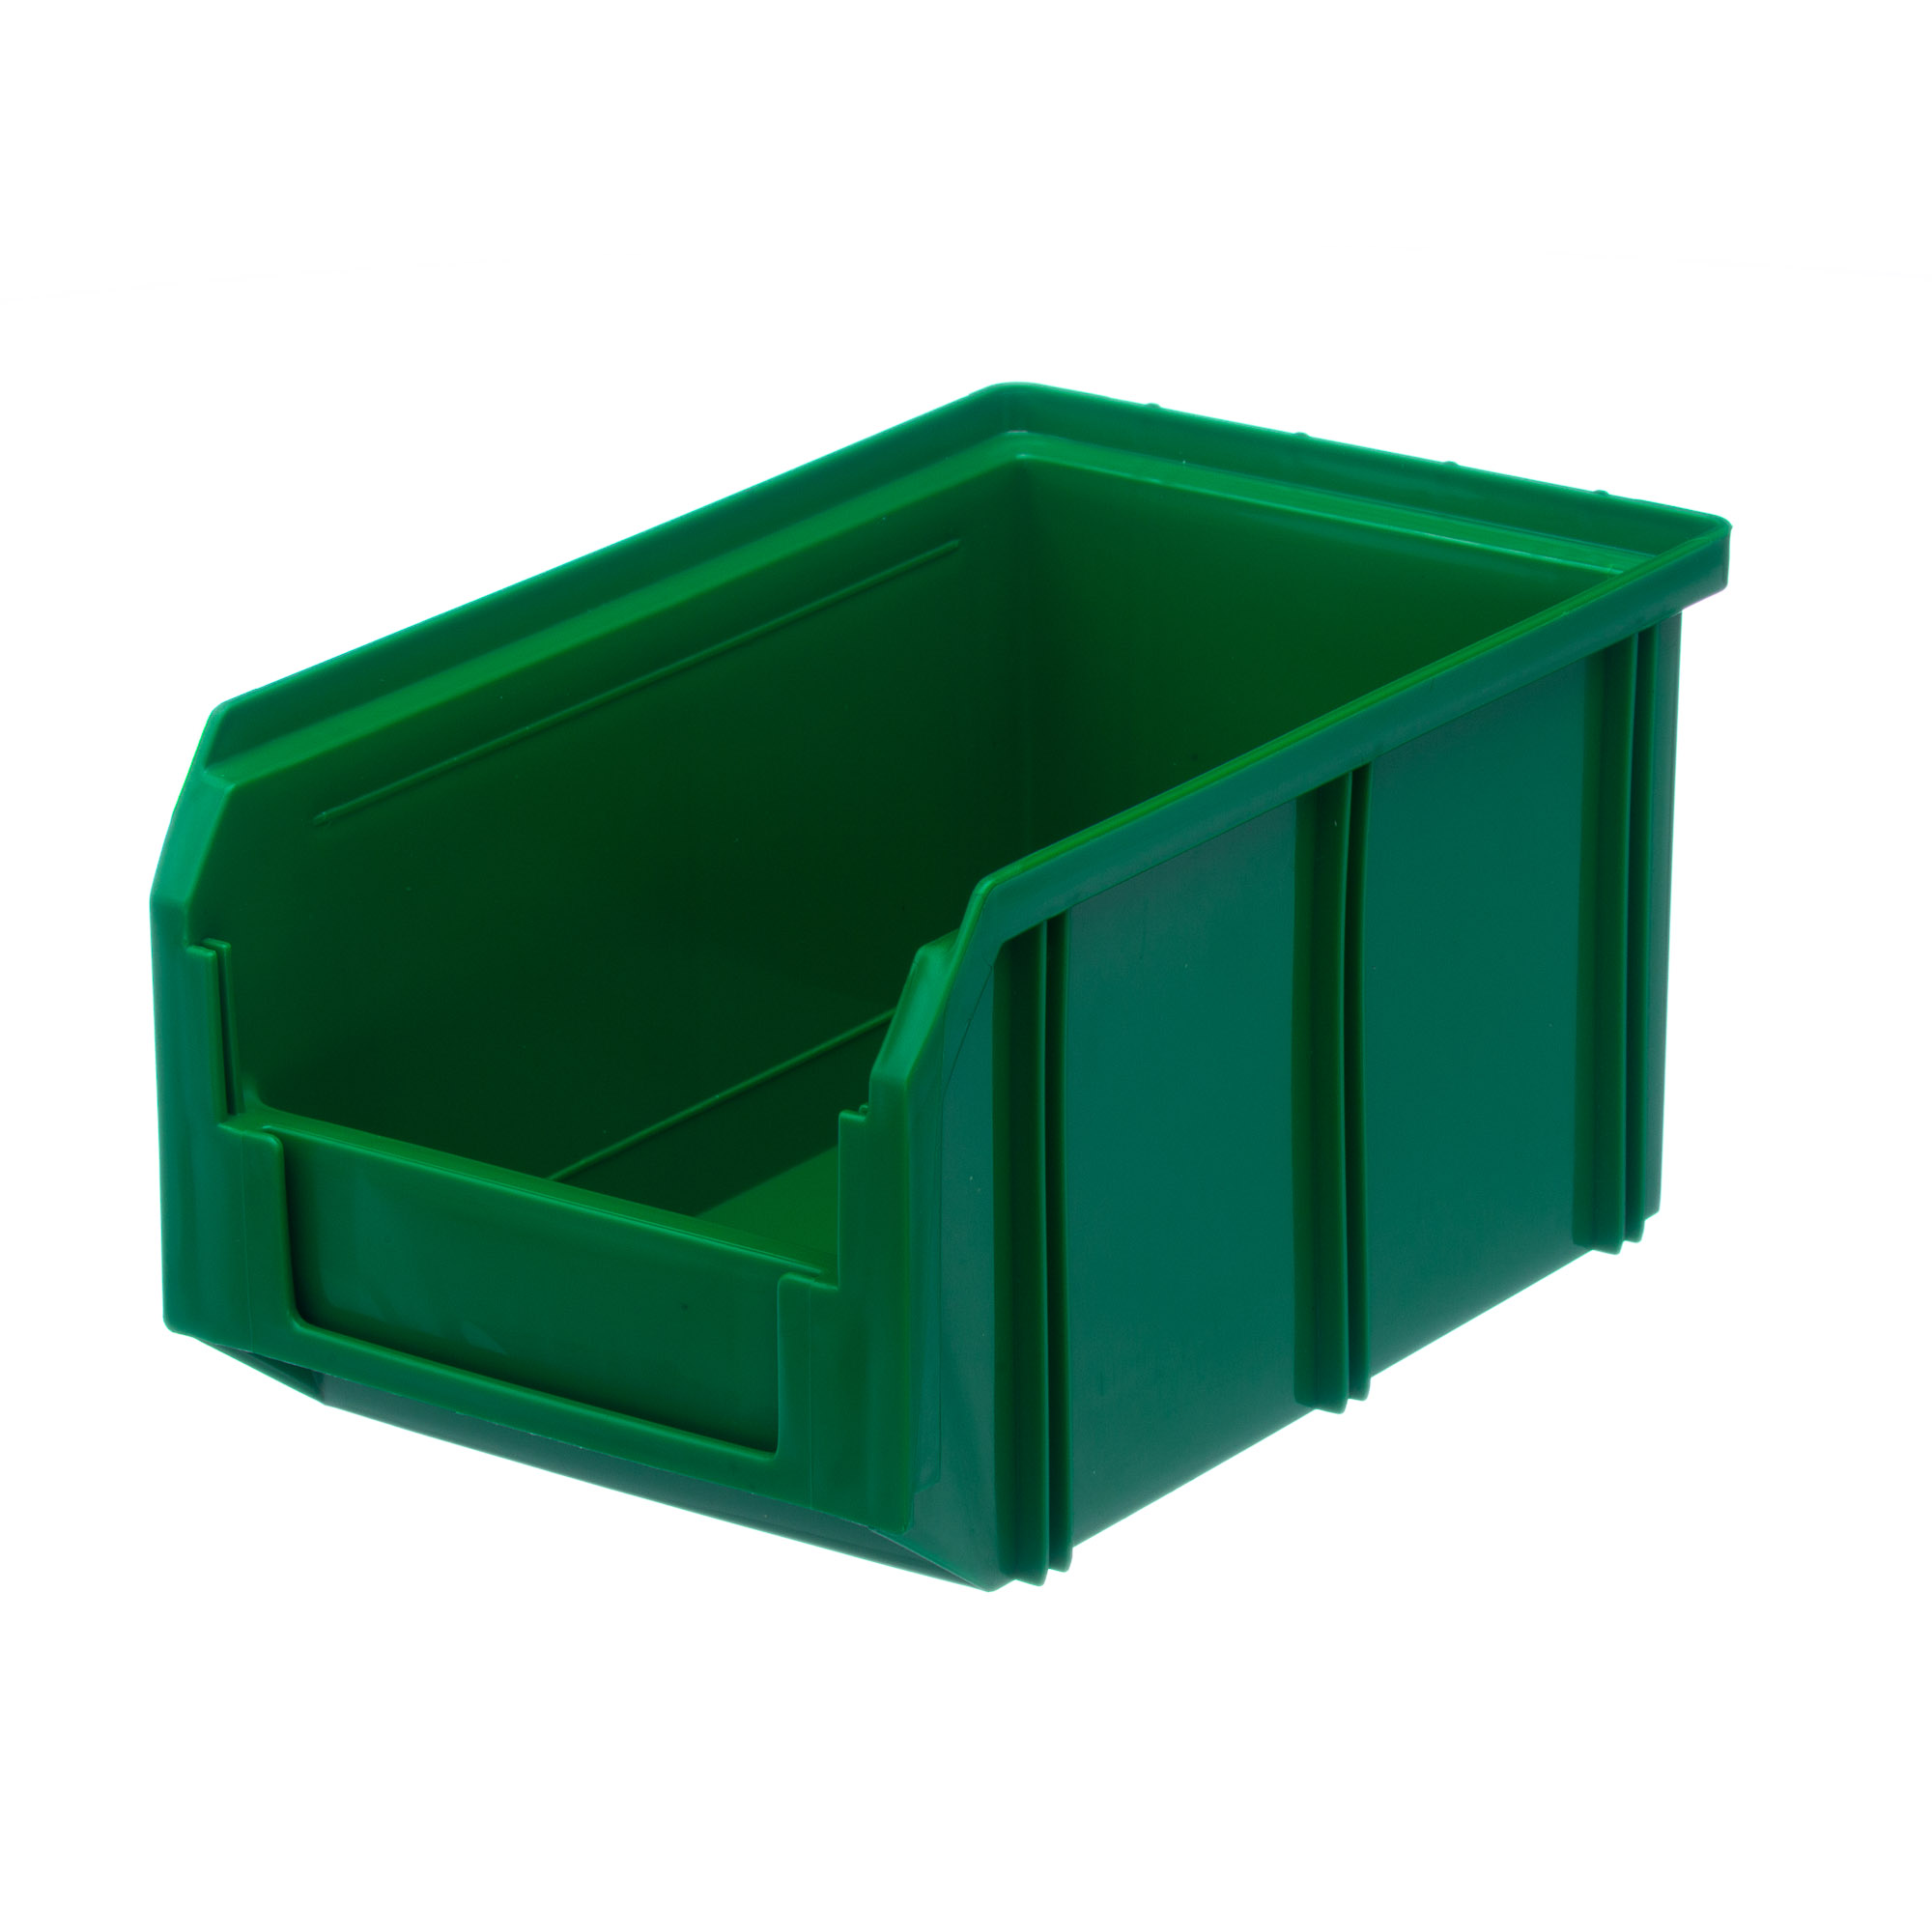 Пластиковый ящик Стелла-техник V-2-зеленый